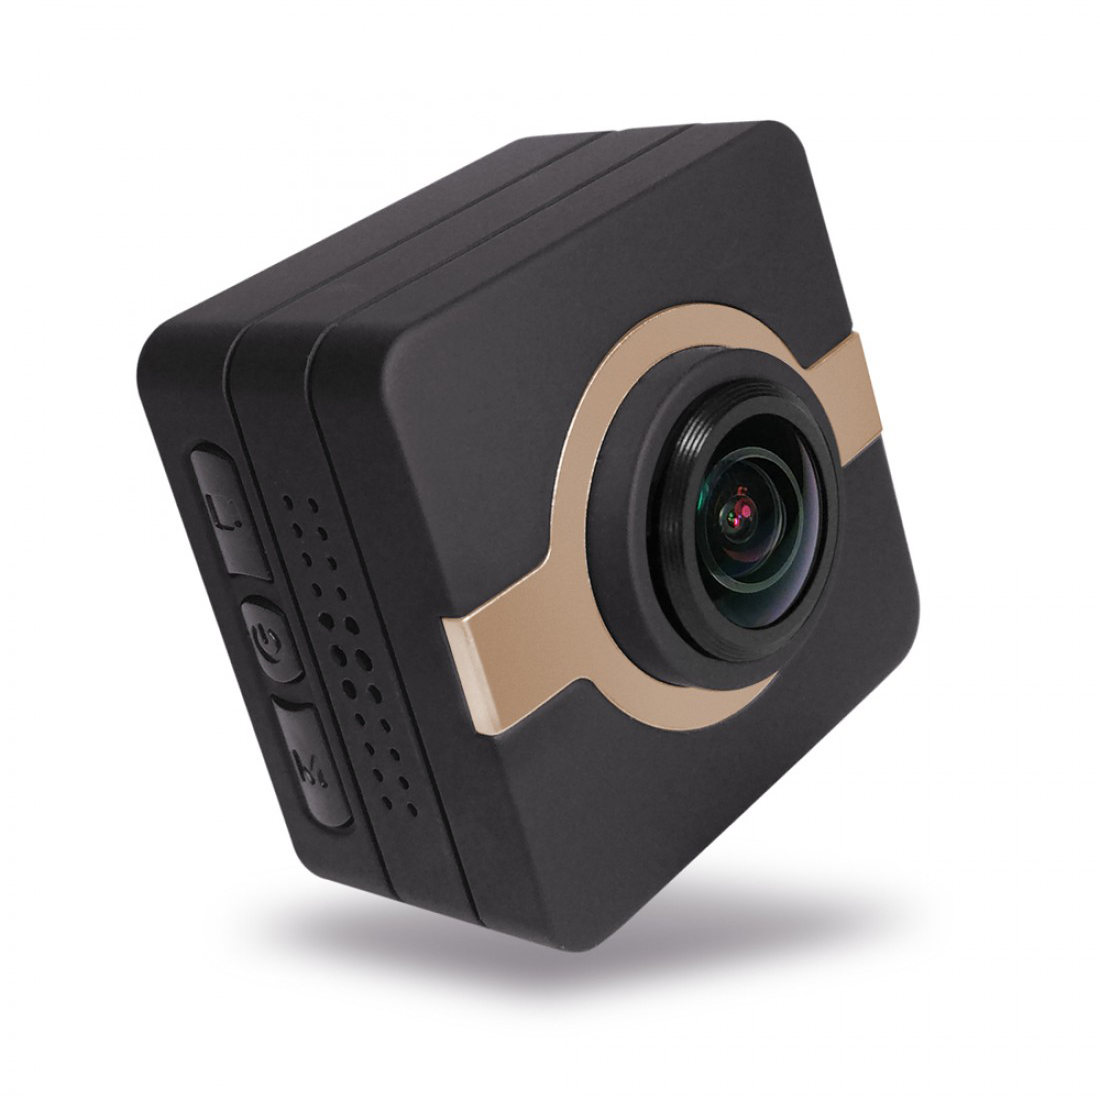 Matecam X1 Mini Eylem Kamera Araba Dashboard Kamera Kamera kaydedici 4K-HI Ultra HD Su Geçirmez DV Video Kamera 16MP 160 Derece Geniş Açı WIFI/G-Sensor/Gyro Stabilizasyon/Hareket Algılama/Uzaktan kumanda Mini DVR araba anahtarları mikro RC kam Bisiklet Kaskı Kam Kahverengi